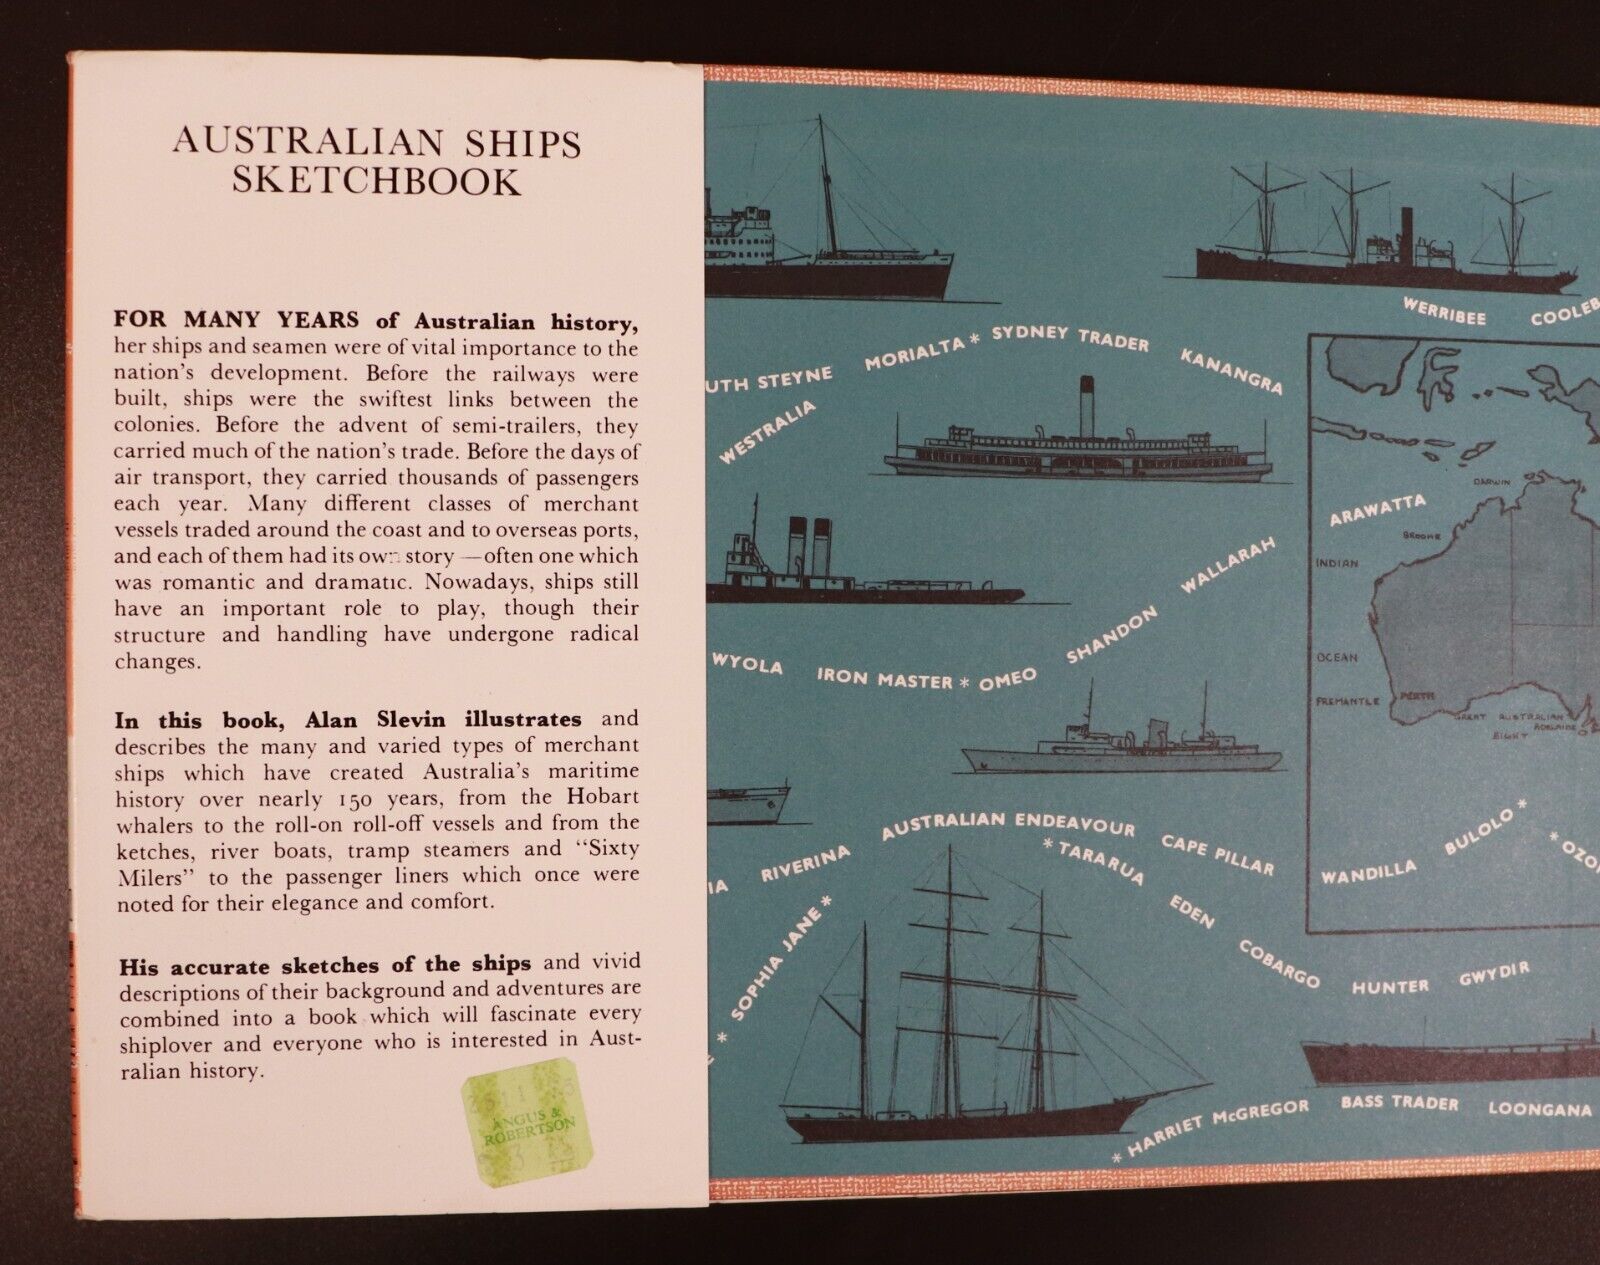 1972 Australian Ships Sketchbook by Alan Slevin Vintage Maritime History Book - 0